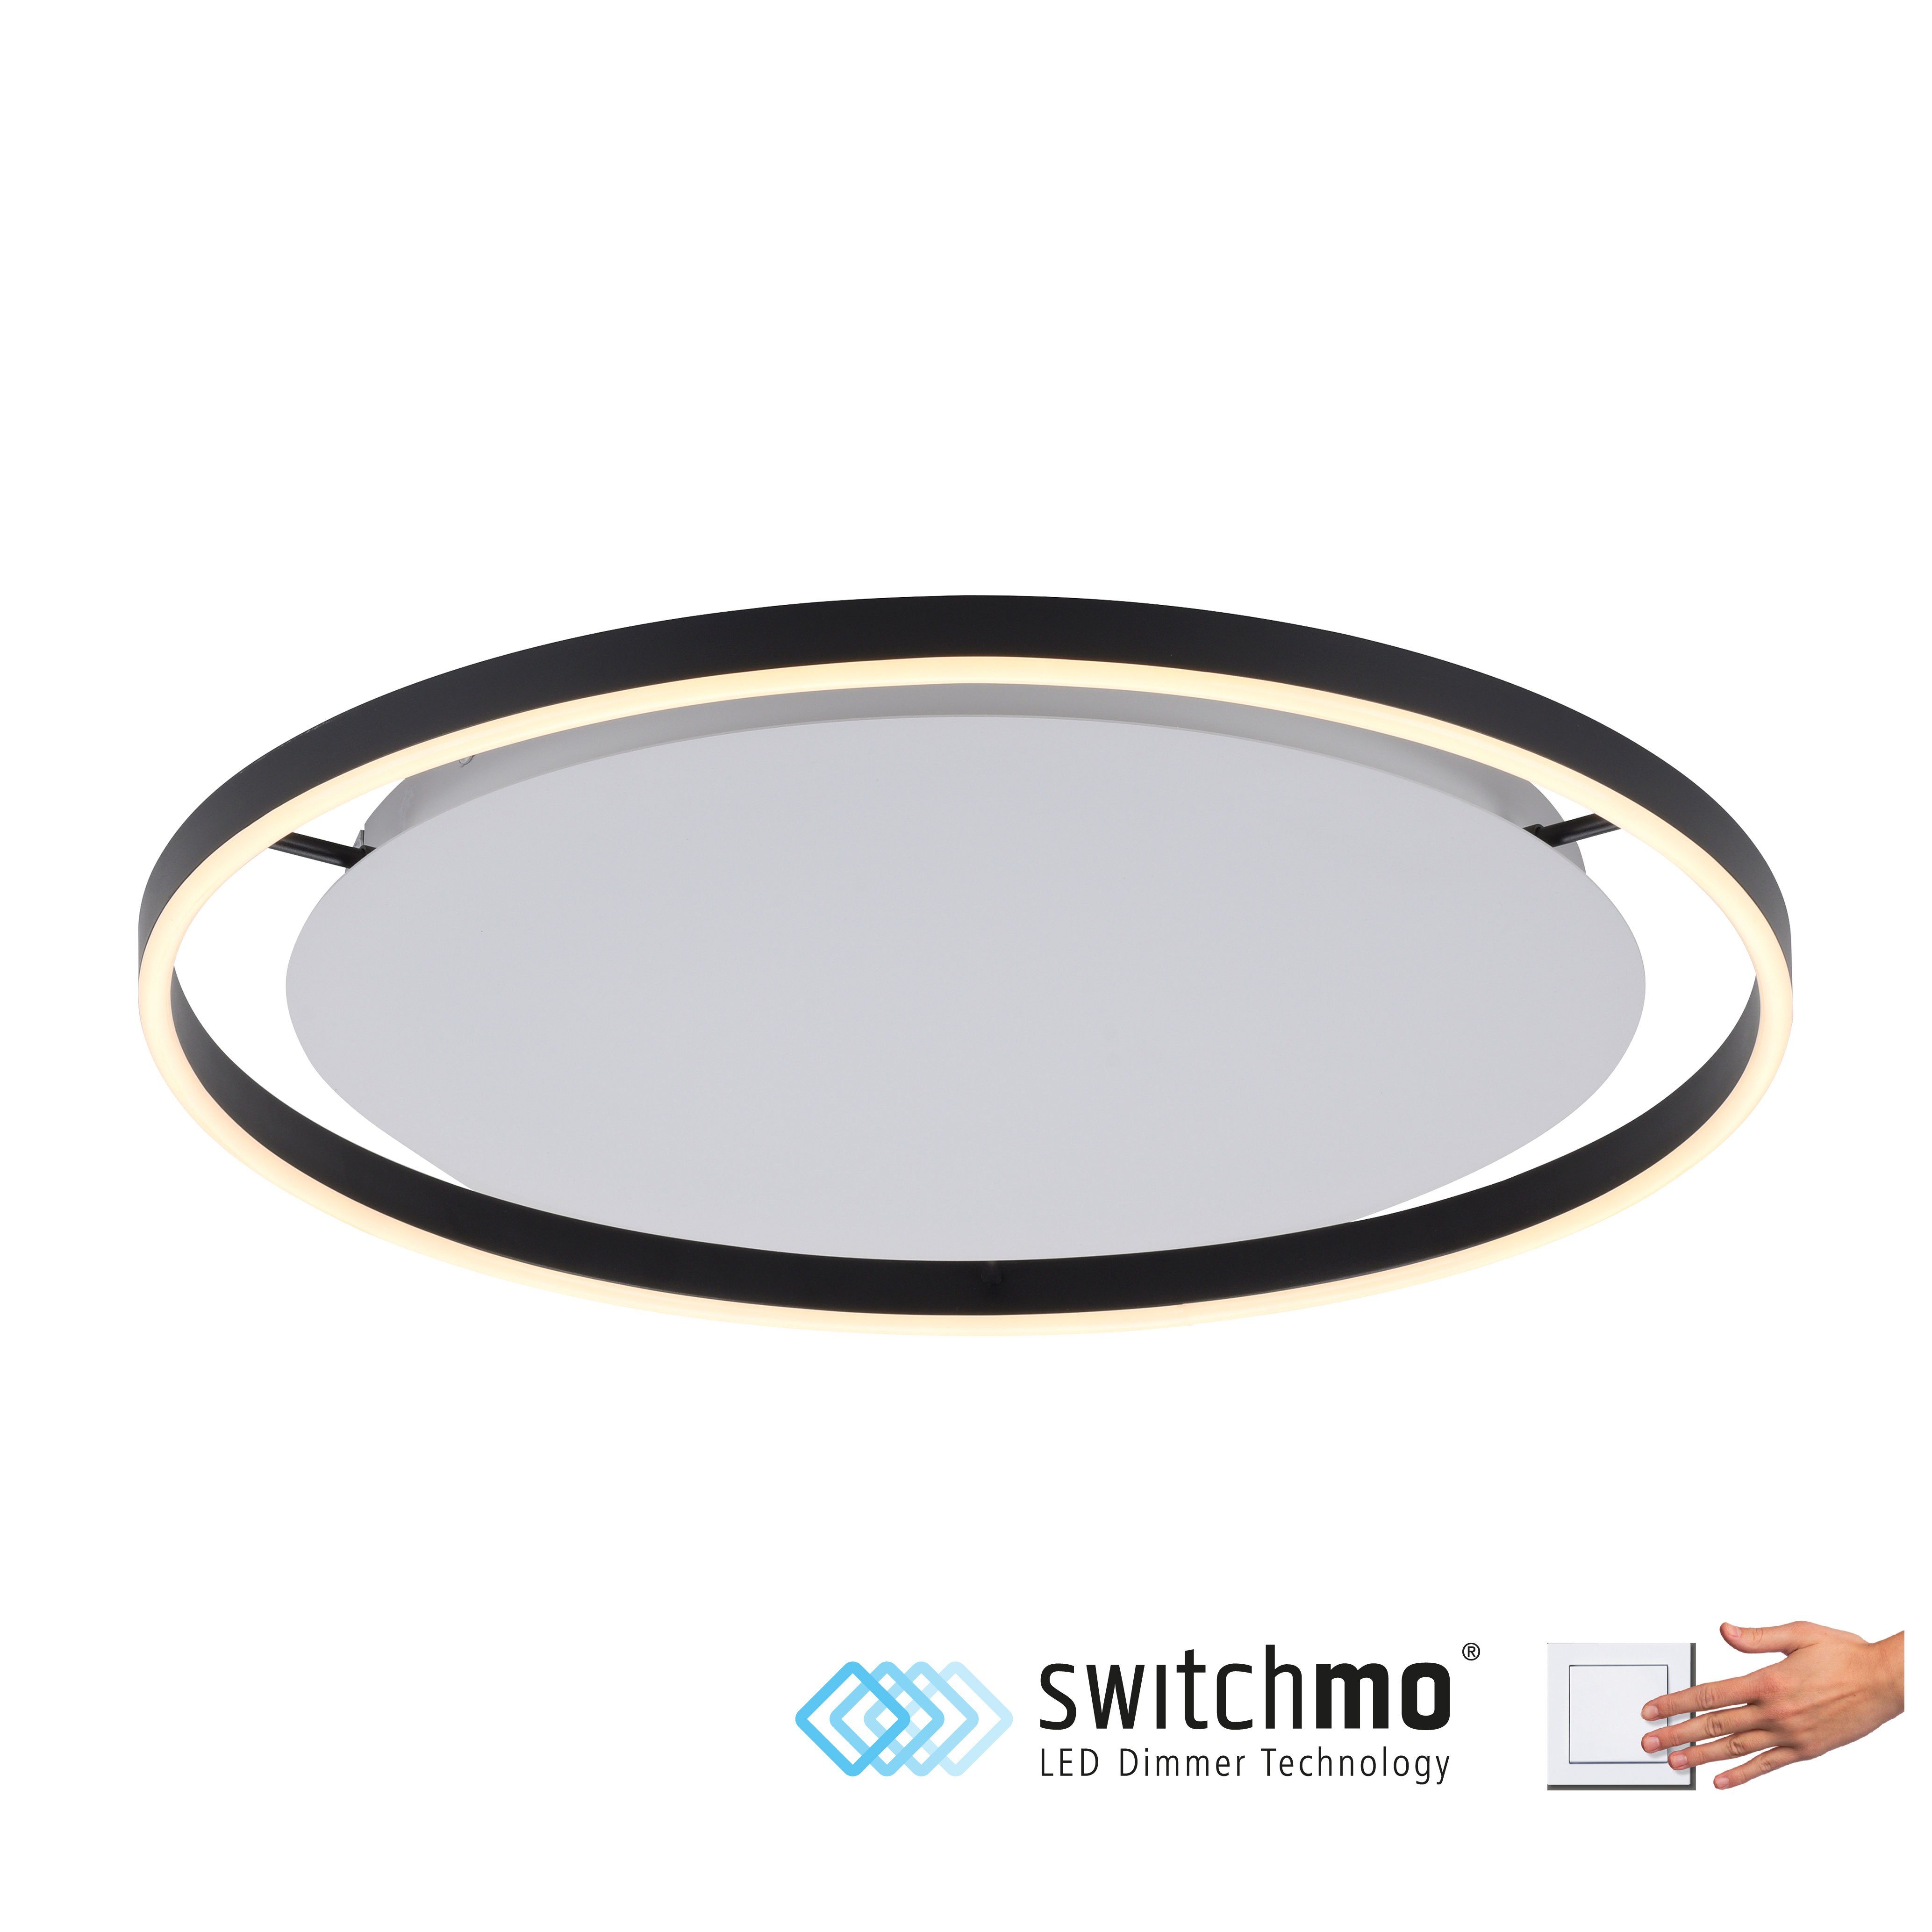 Direkt Switchmo, RITUS, fest LED, Switchmo LED dimmbar, integriert, dimmbar, Warmweiß, Deckenleuchte Leuchten